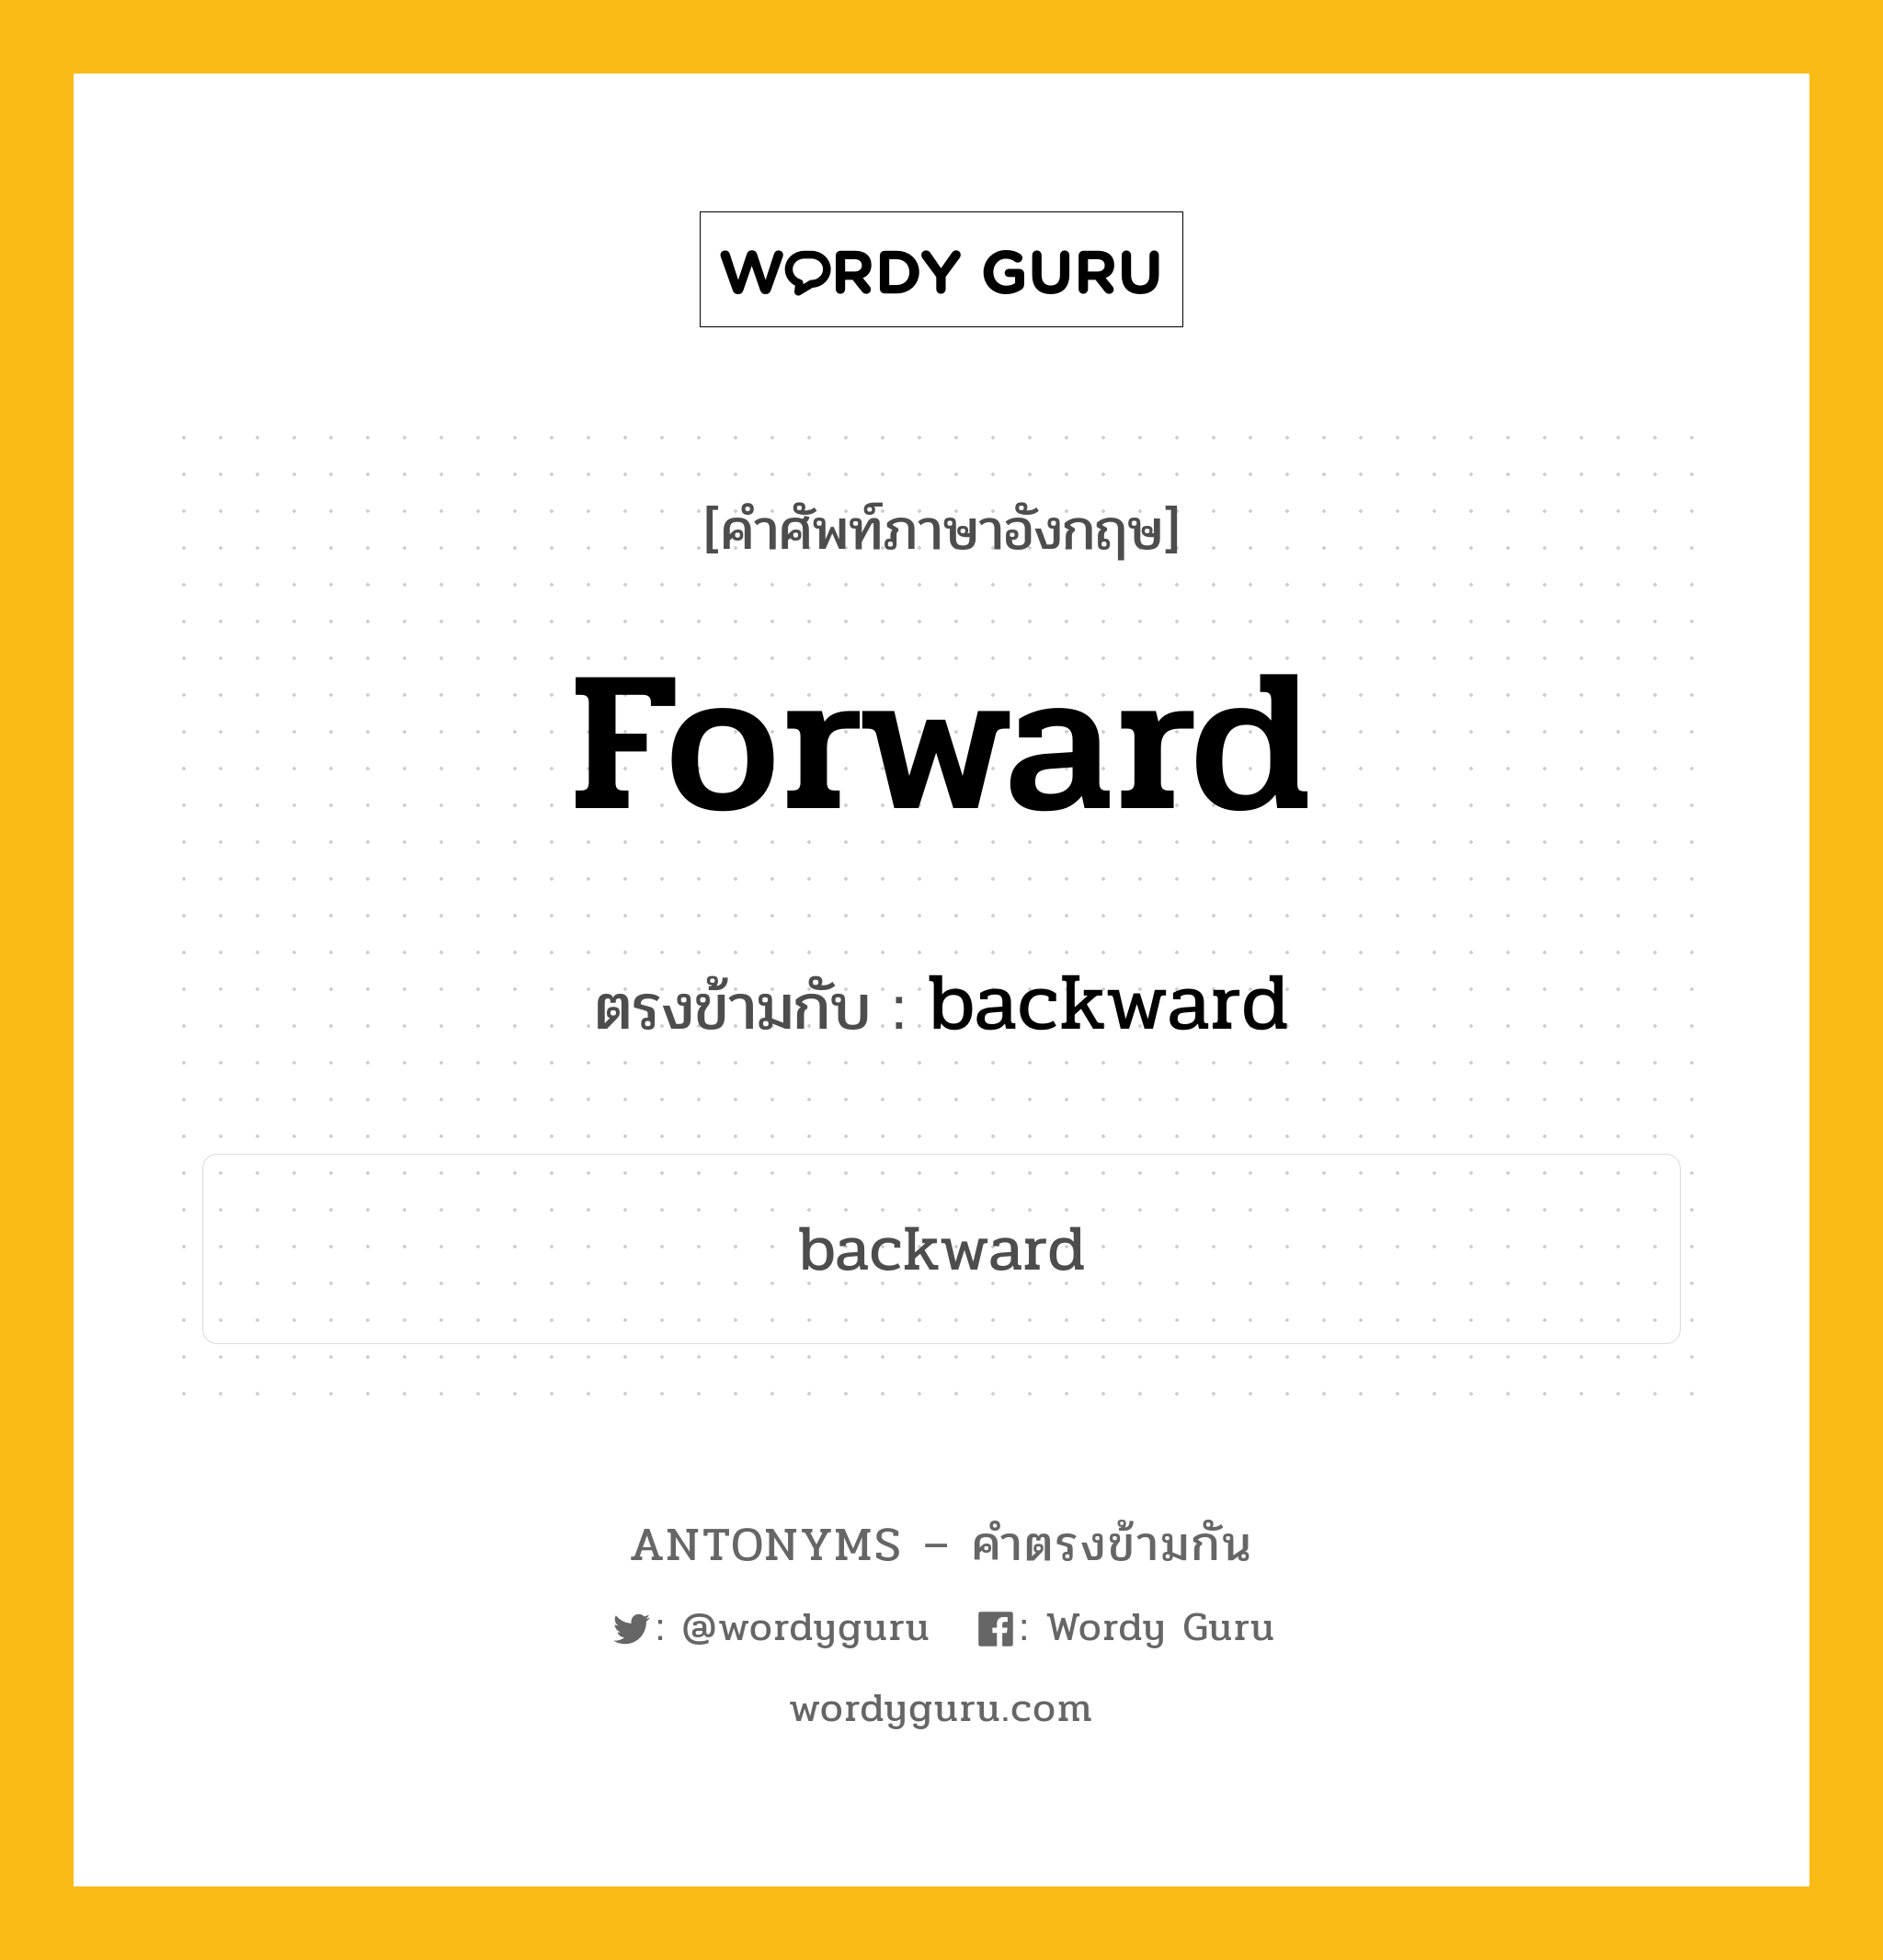 forward เป็นคำตรงข้ามกับคำไหนบ้าง?, คำศัพท์ภาษาอังกฤษ forward ตรงข้ามกับ backward หมวด backward